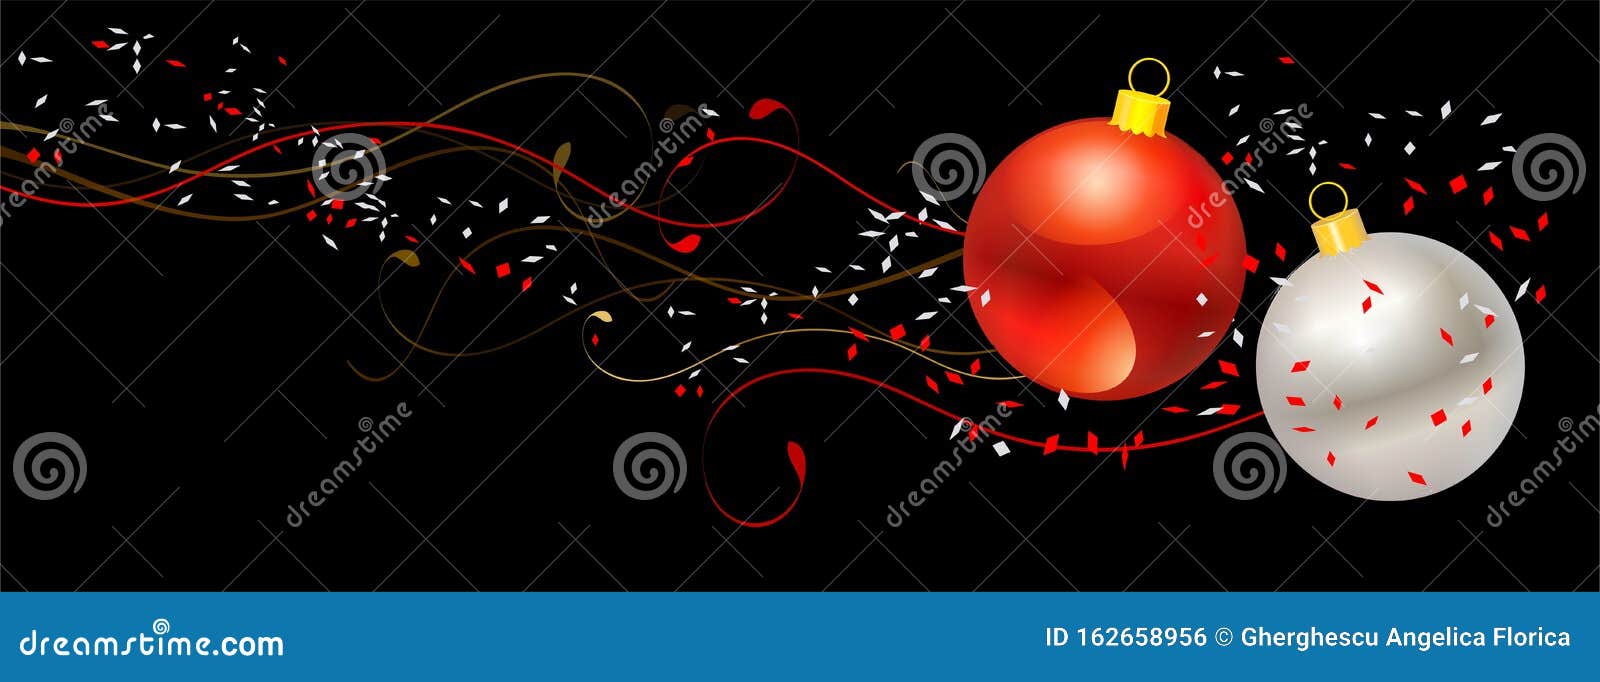 christmas banner with christmas balls and confeti - 